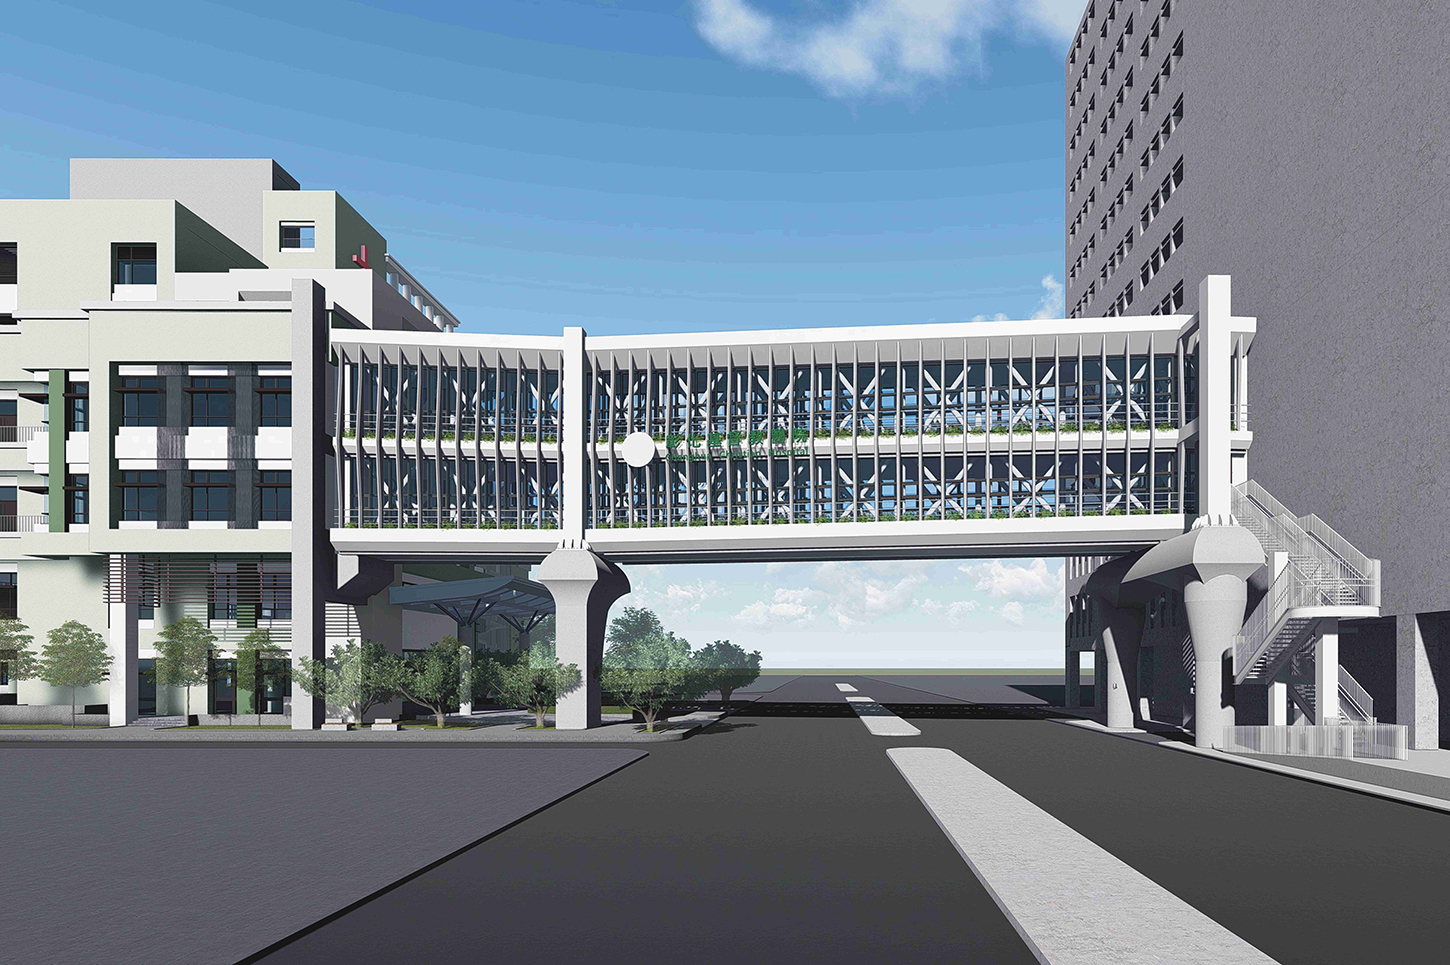 彰基醫學中心癌症質子醫療大樓與總院連接之天橋示意圖。